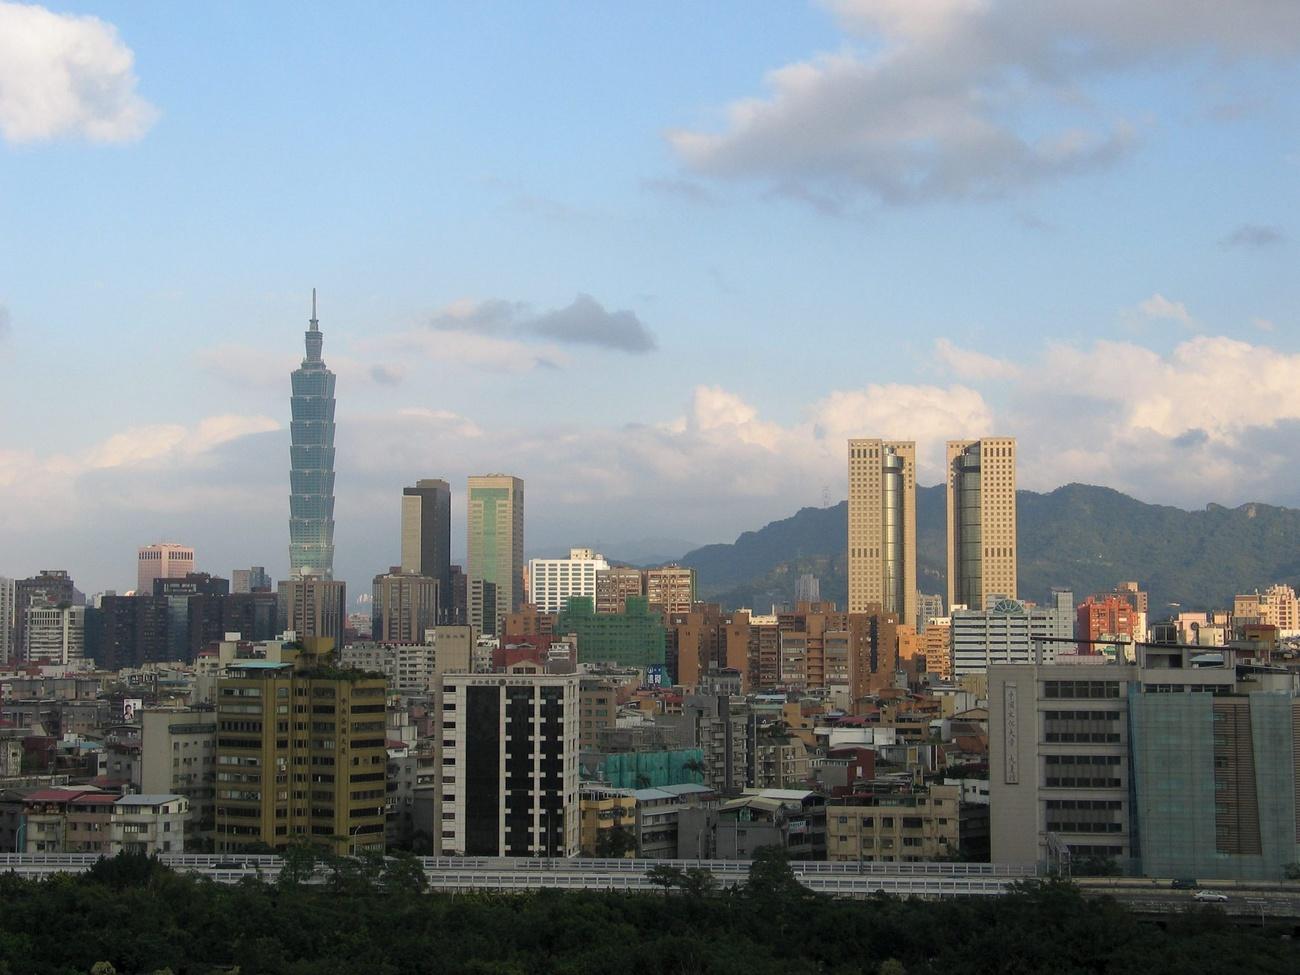 Le gratte-ciel Taipei 101 (à gauche) mesure 508 mètres de hauteur. [Keystone - Stringer]